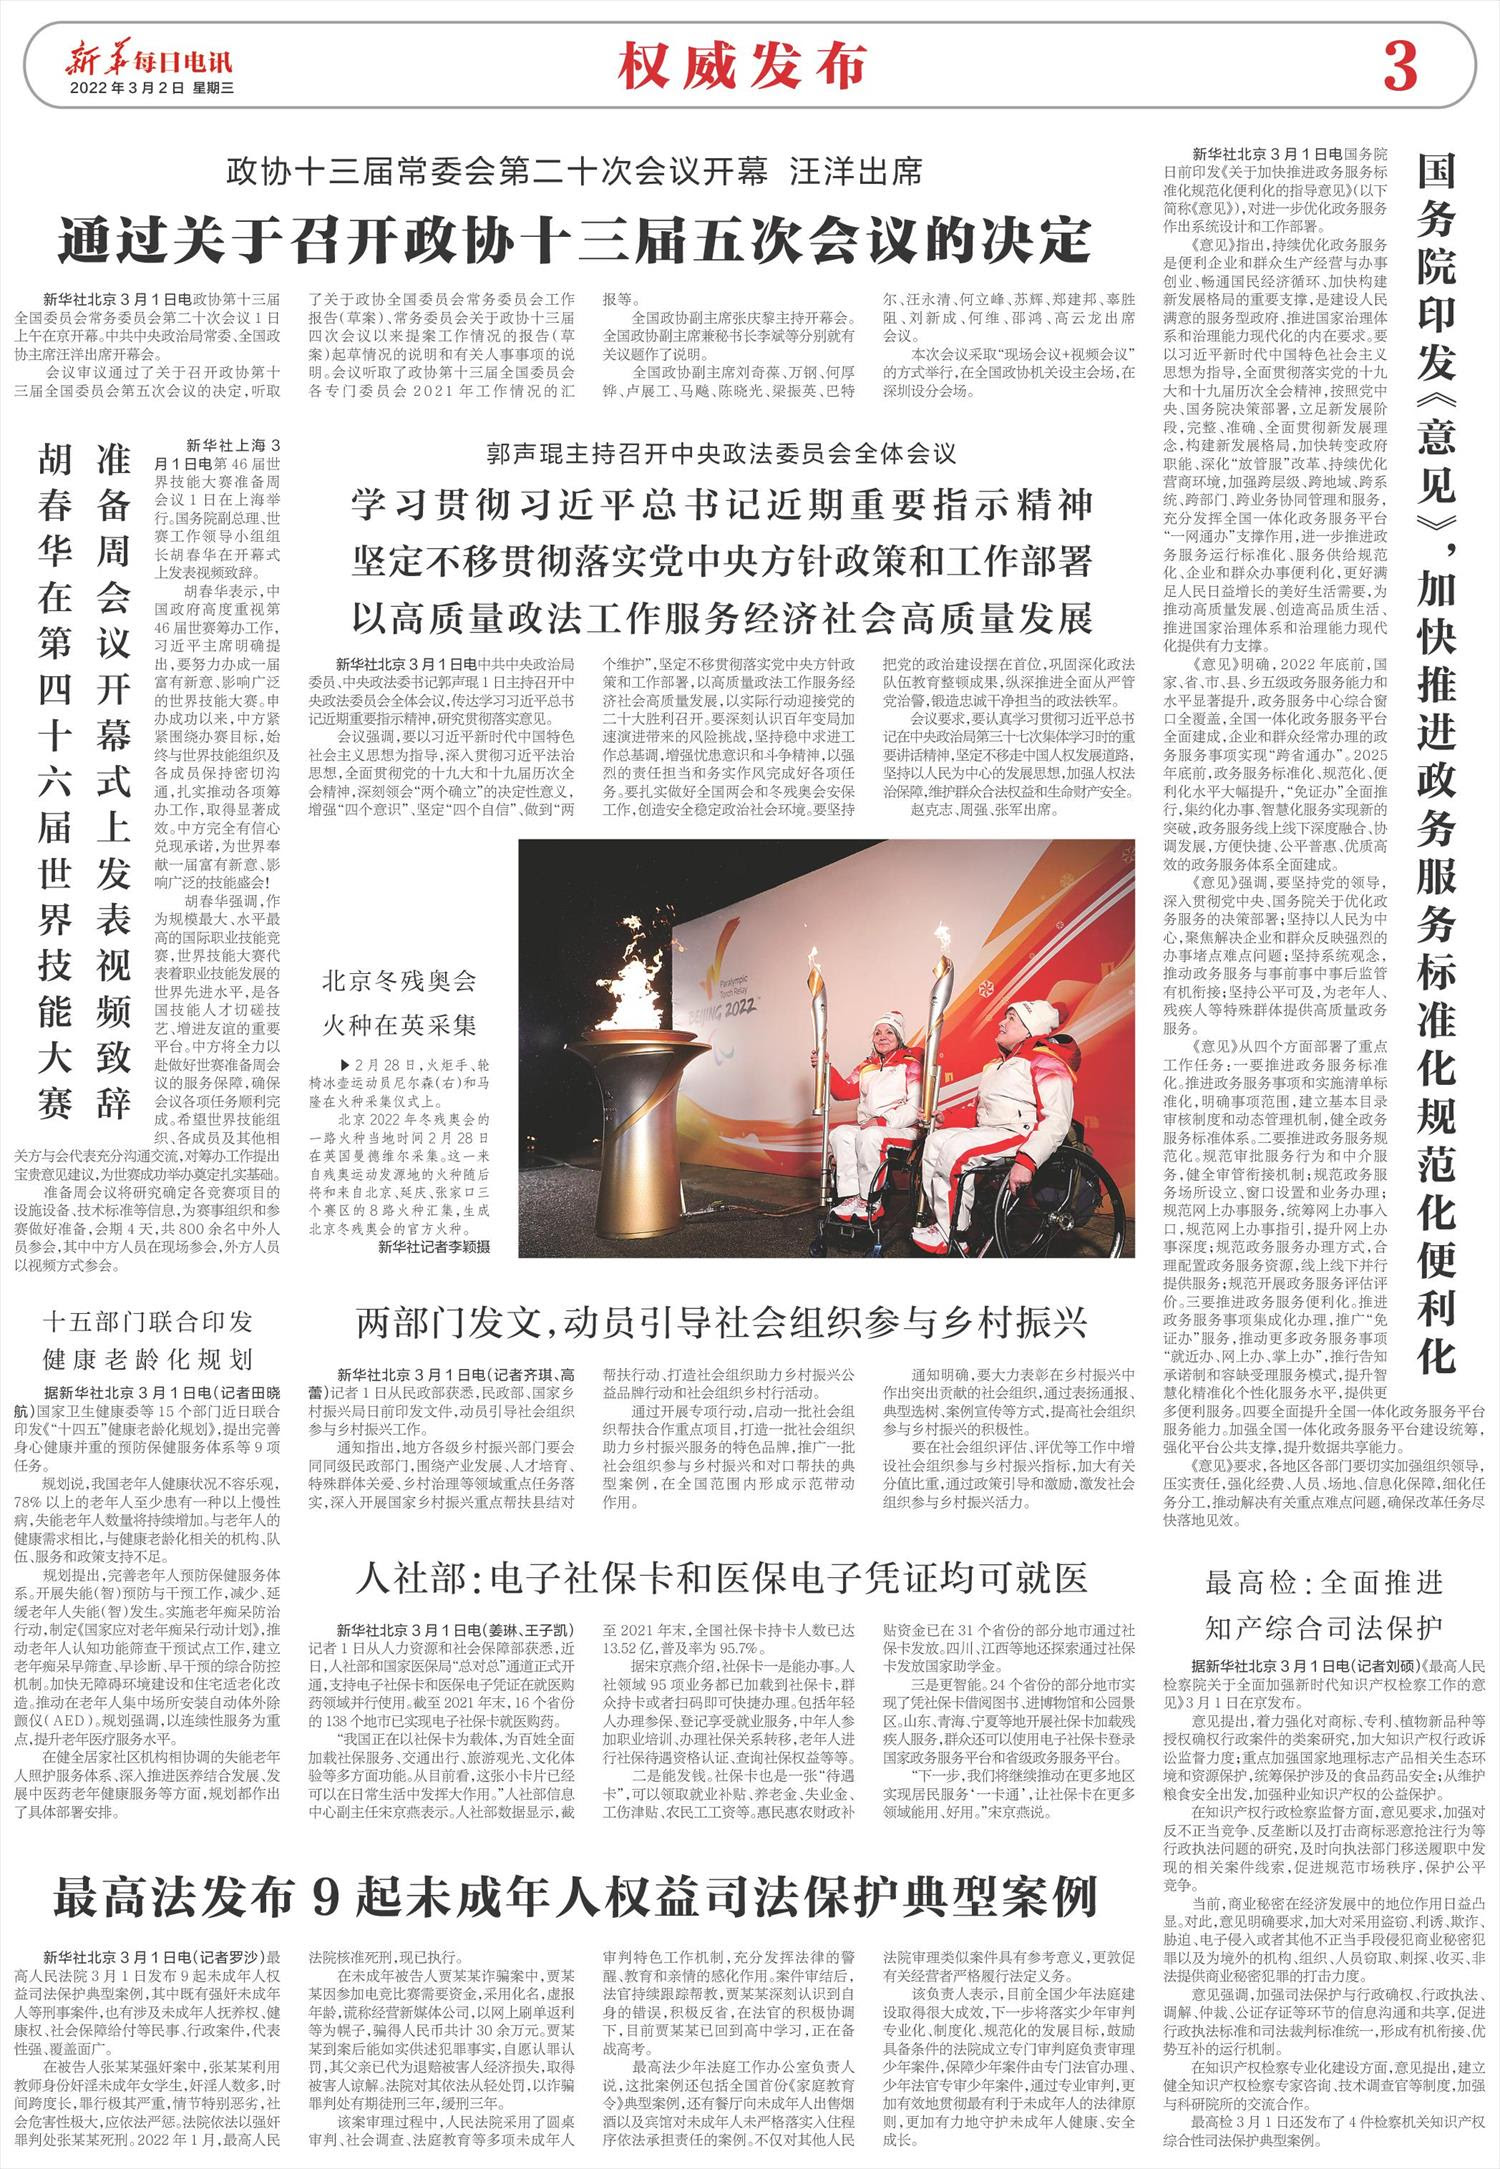 新华每日电讯 微报纸 22年03月02日